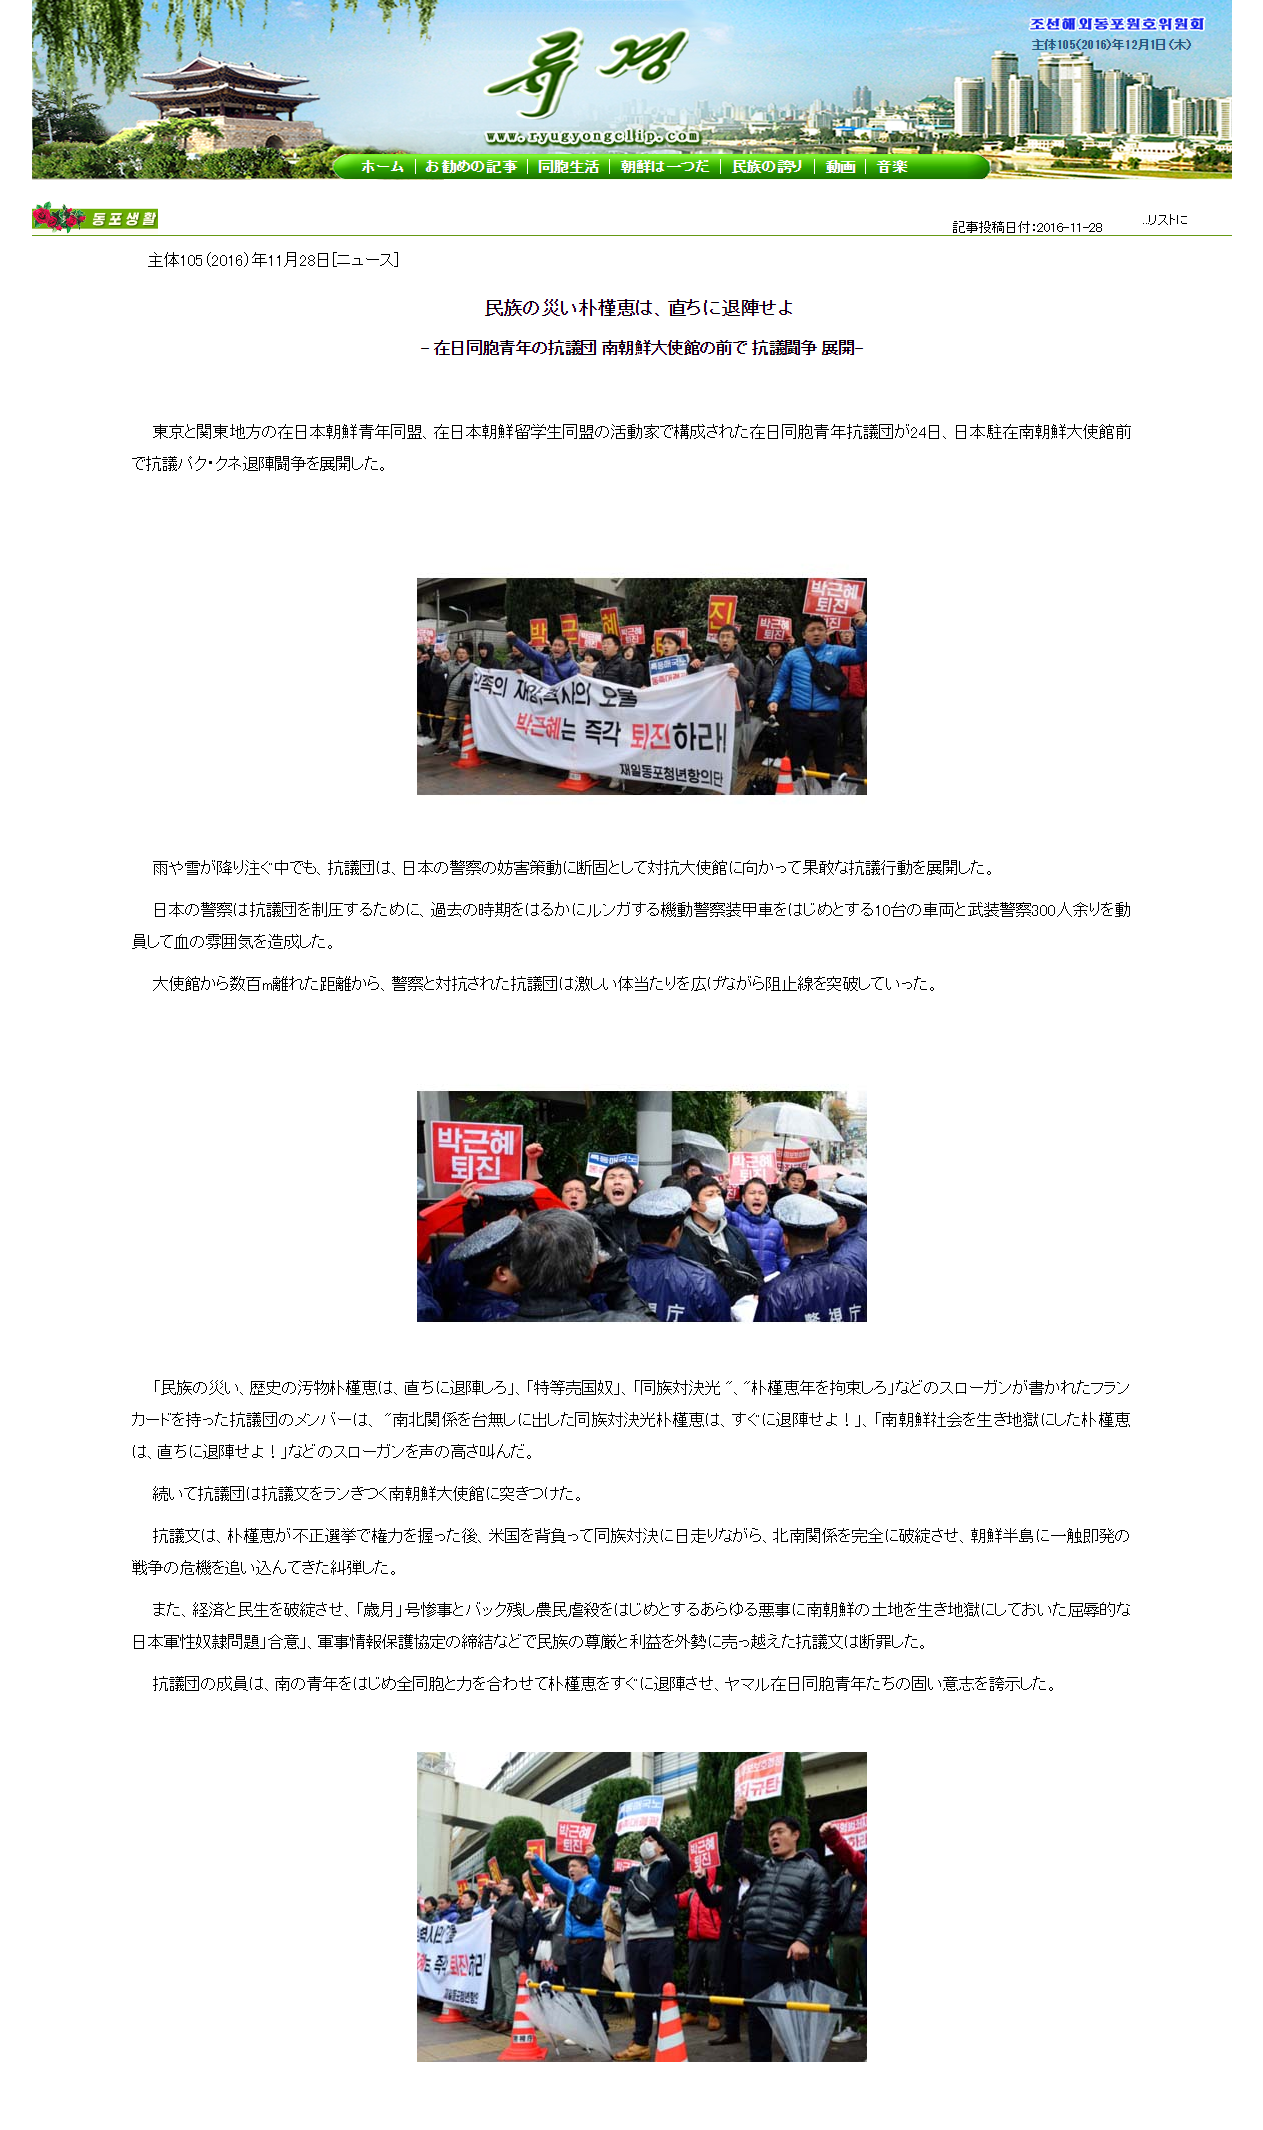 在日同胞青年抗議団が南朝鮮大使館の前で抗議闘争を展開 Http Www Kcna Kp Kcna User Article Ret By Moemoevip Medium